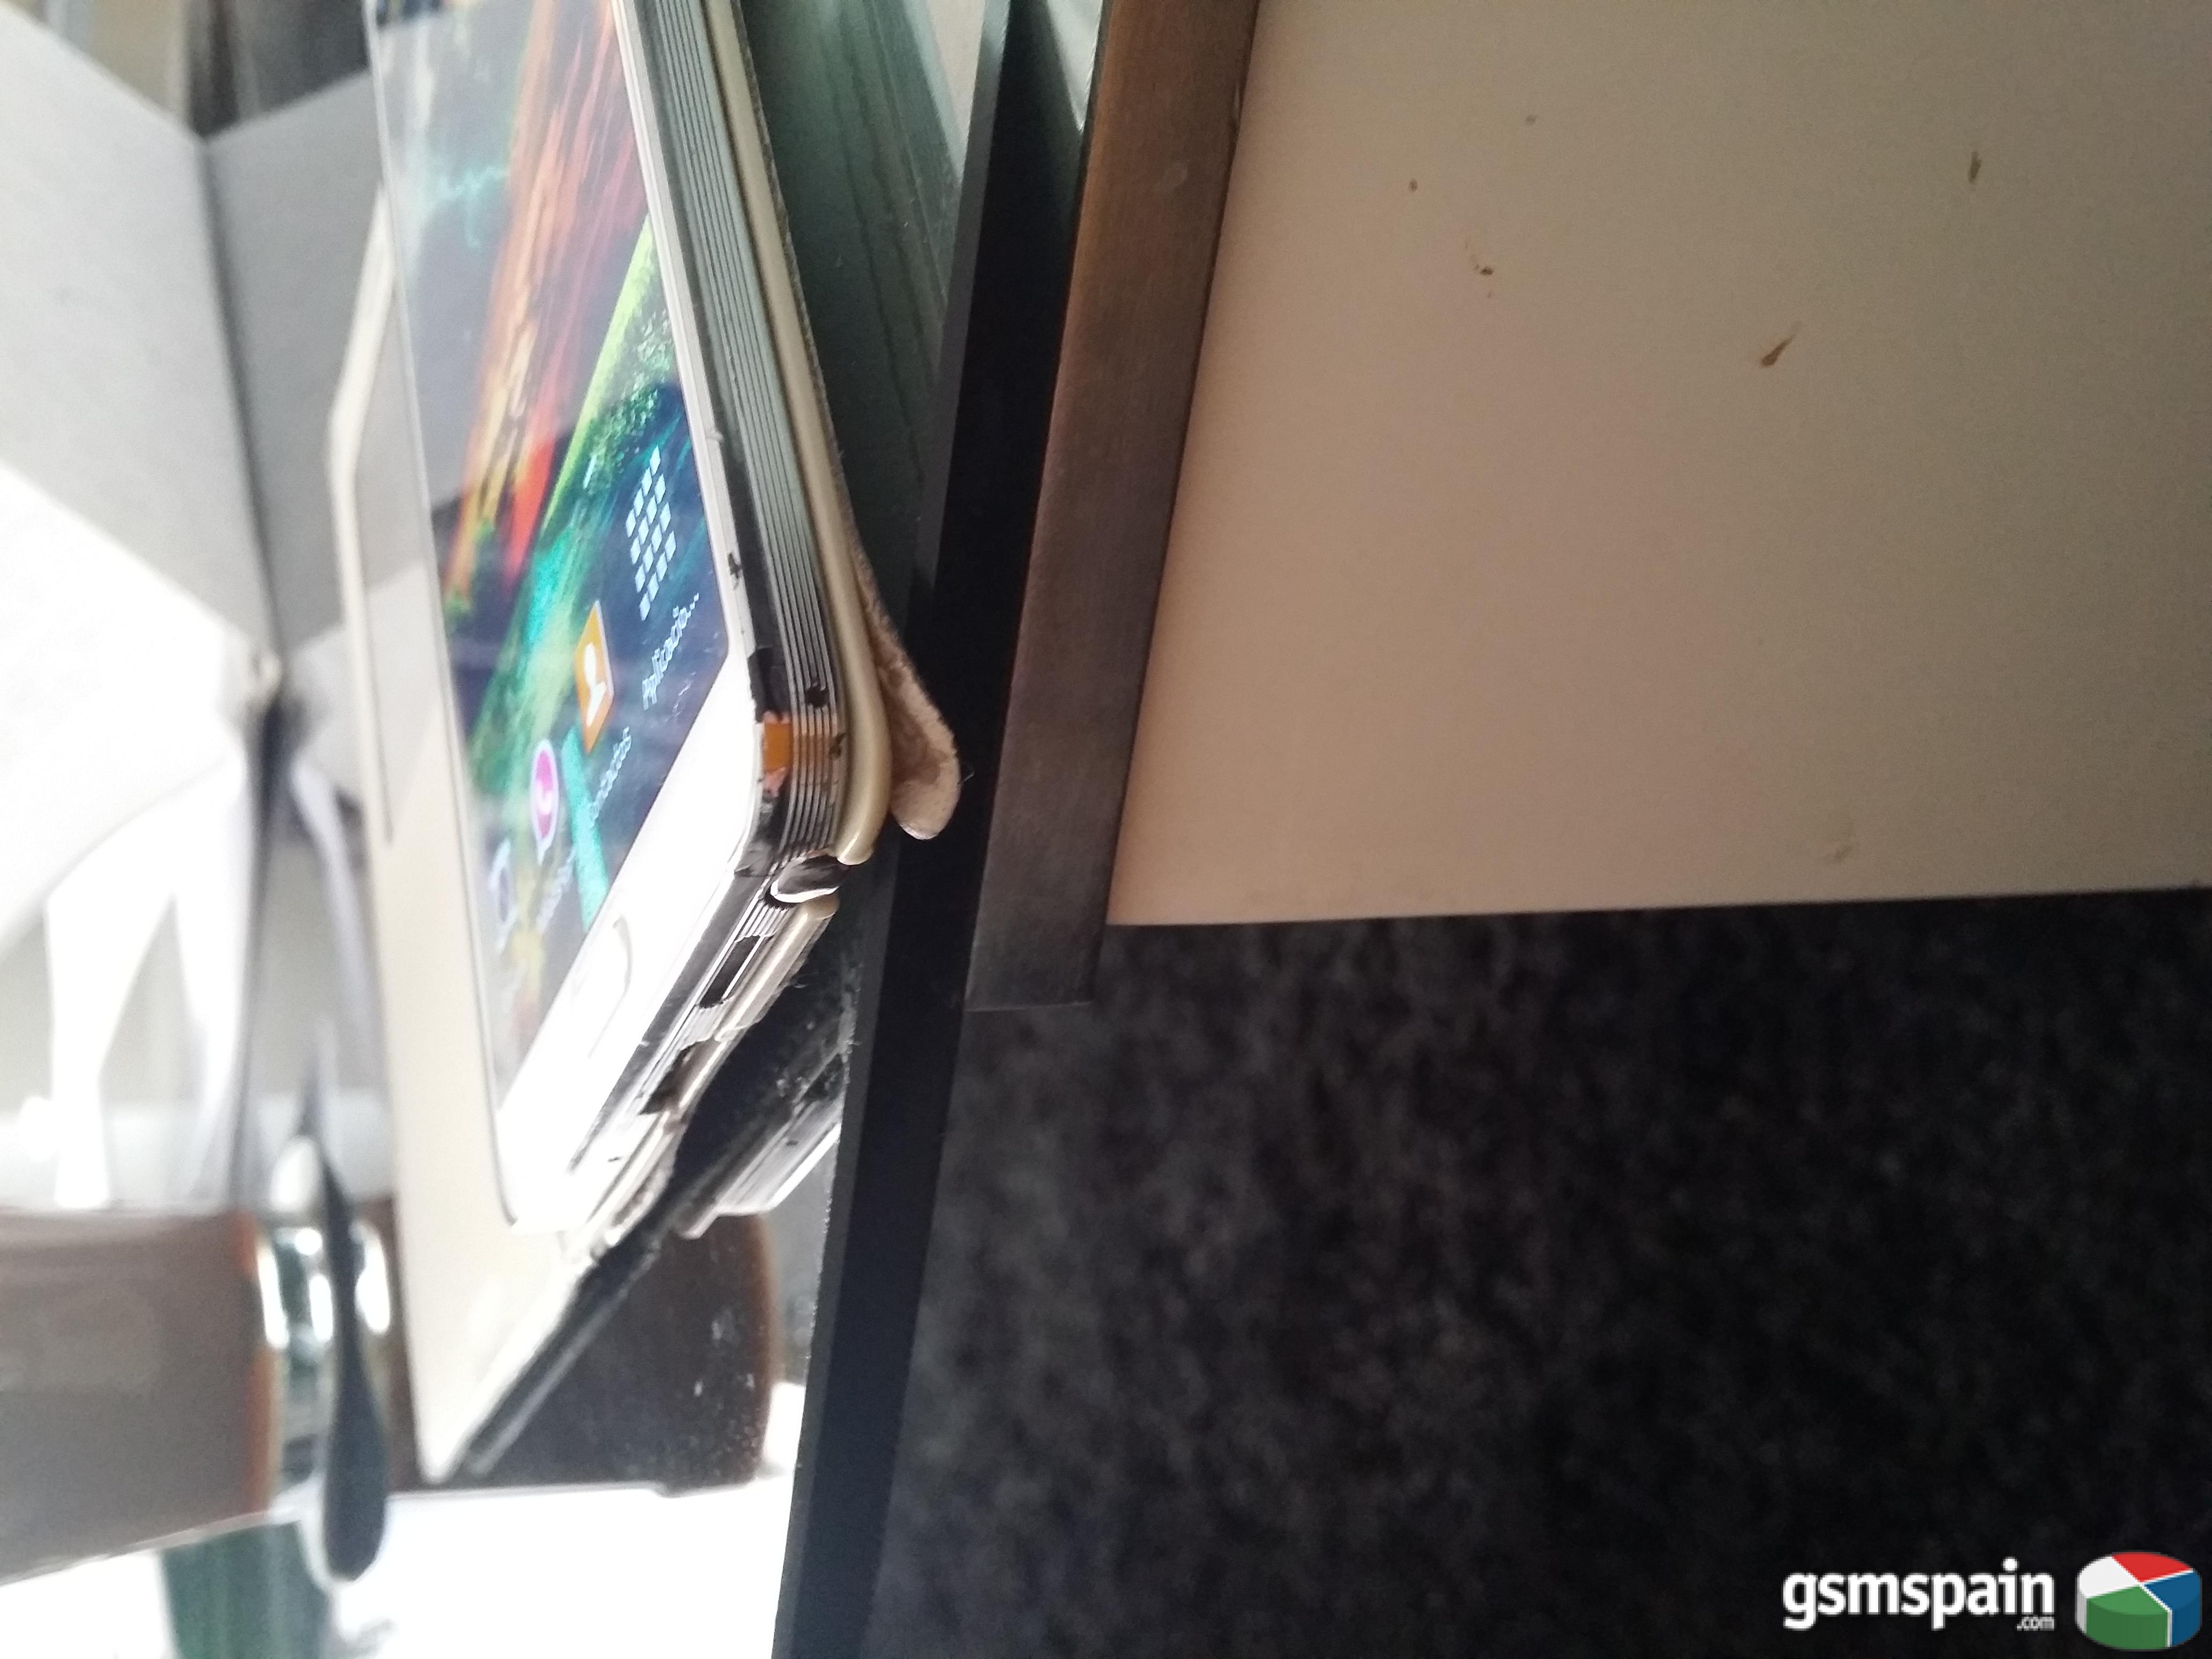 [VENDO] Galaxy Note 3 Blanco como Nuevo solo un golpe en marco con Garanta (VALENCIA)